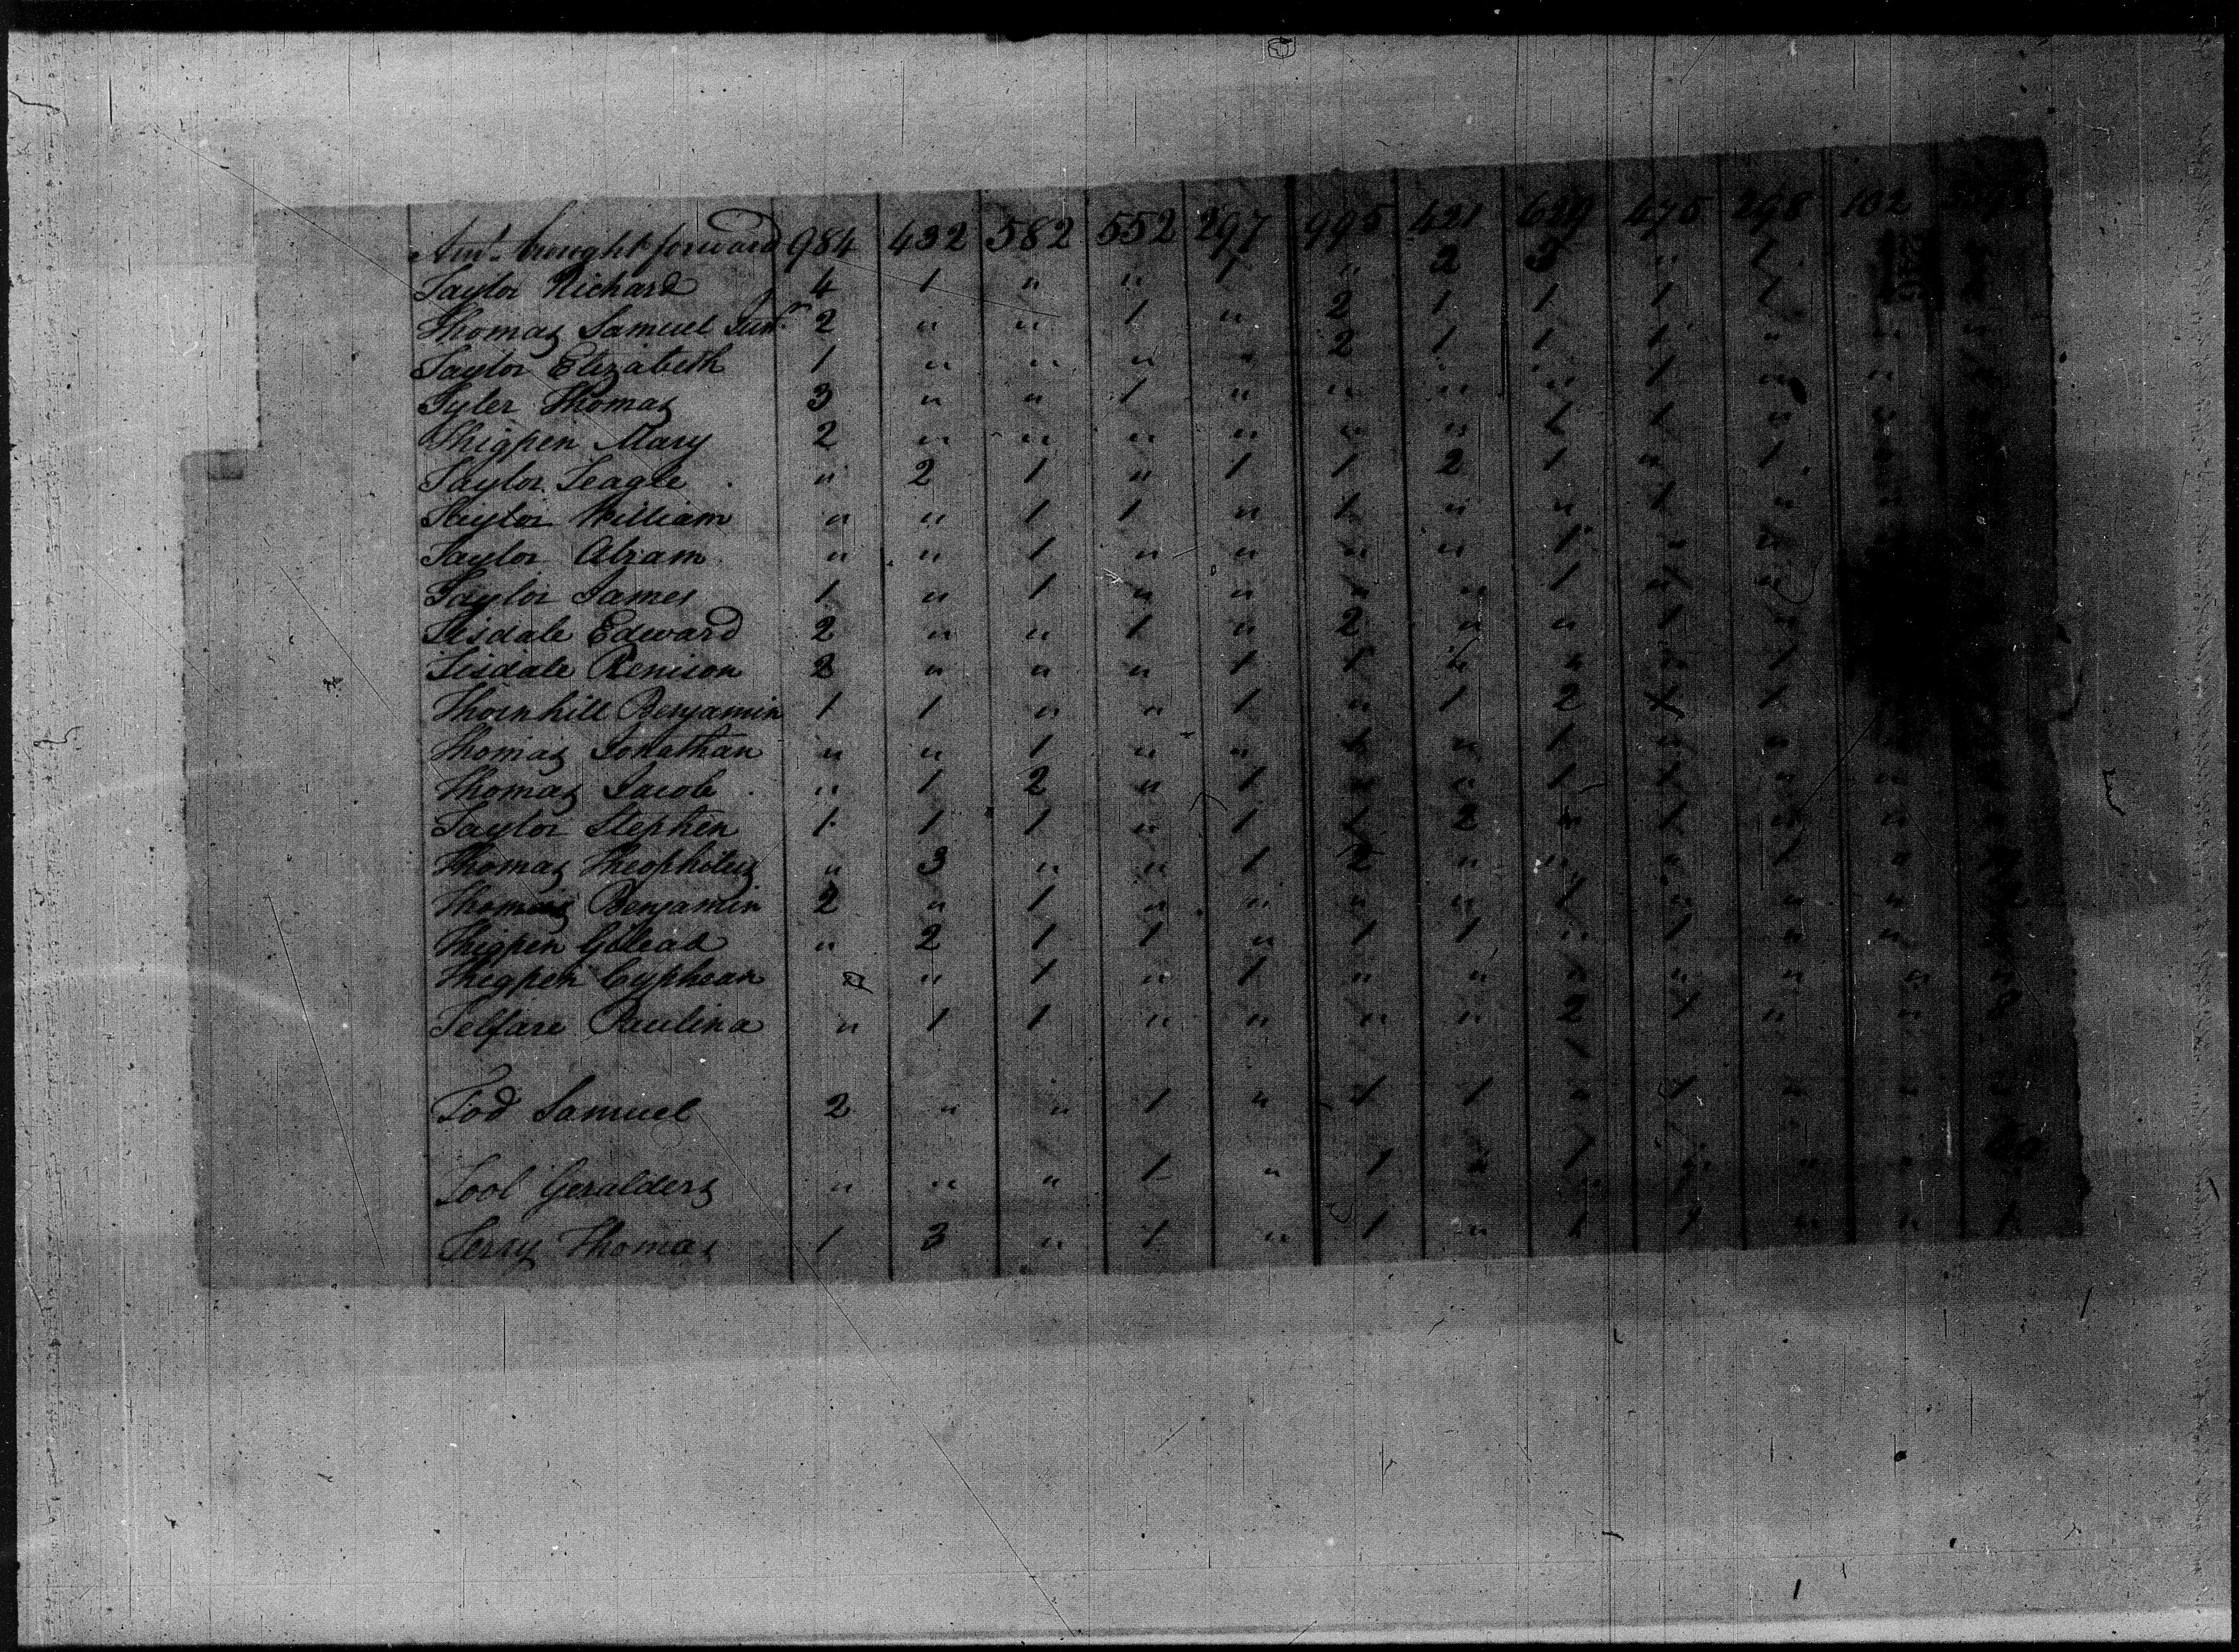 Theophilus Thomas census record.